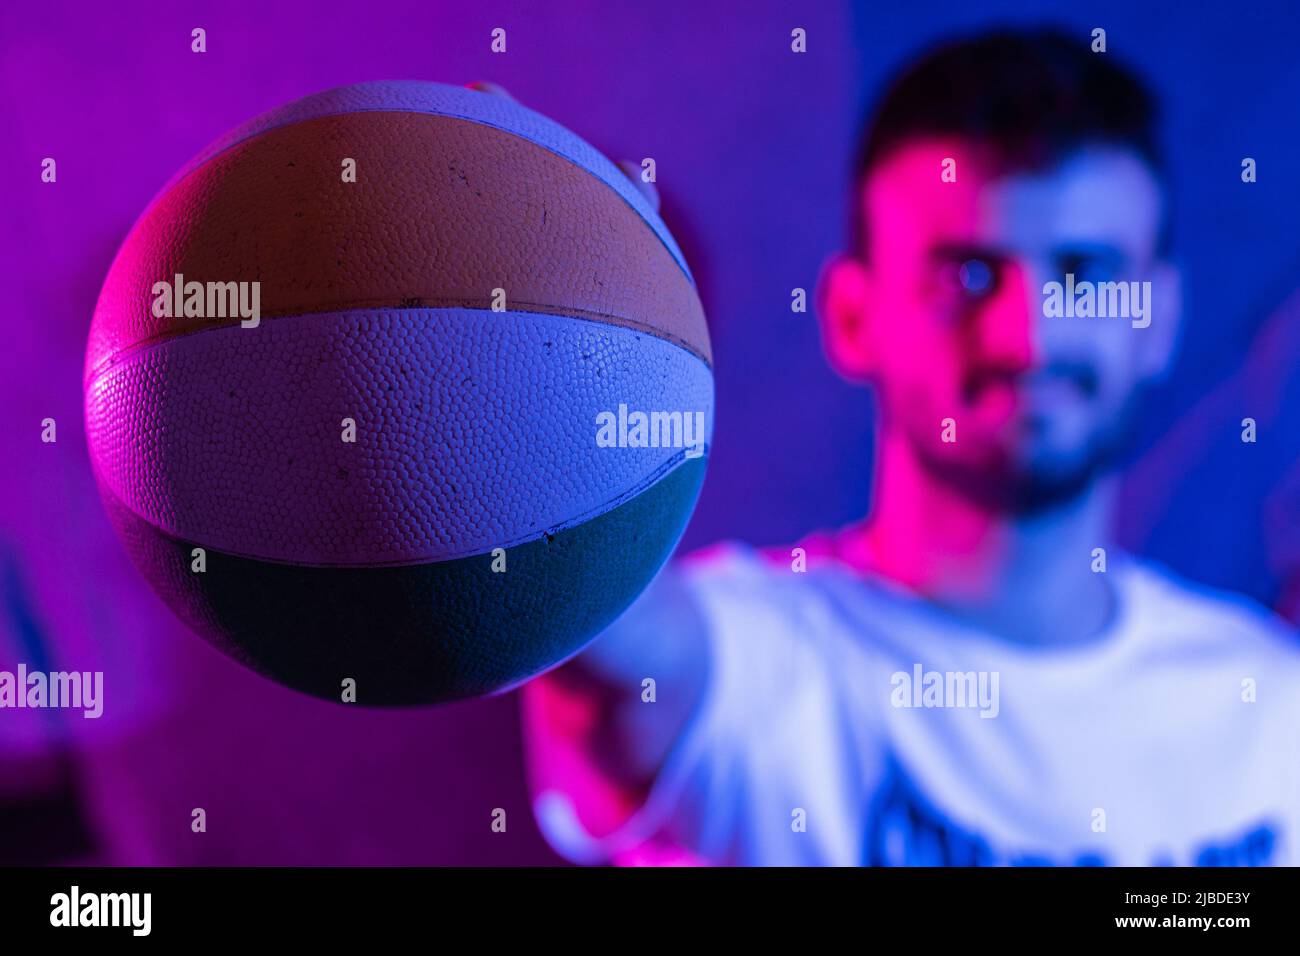 Ein junger kaukasischer bärtiger Mann mit ausgestrecktem Arm, der einen kleinen Basketball in verschiedenen Farben hält. Der Ball ist im Vordergrund und im Perso im Fokus Stockfoto